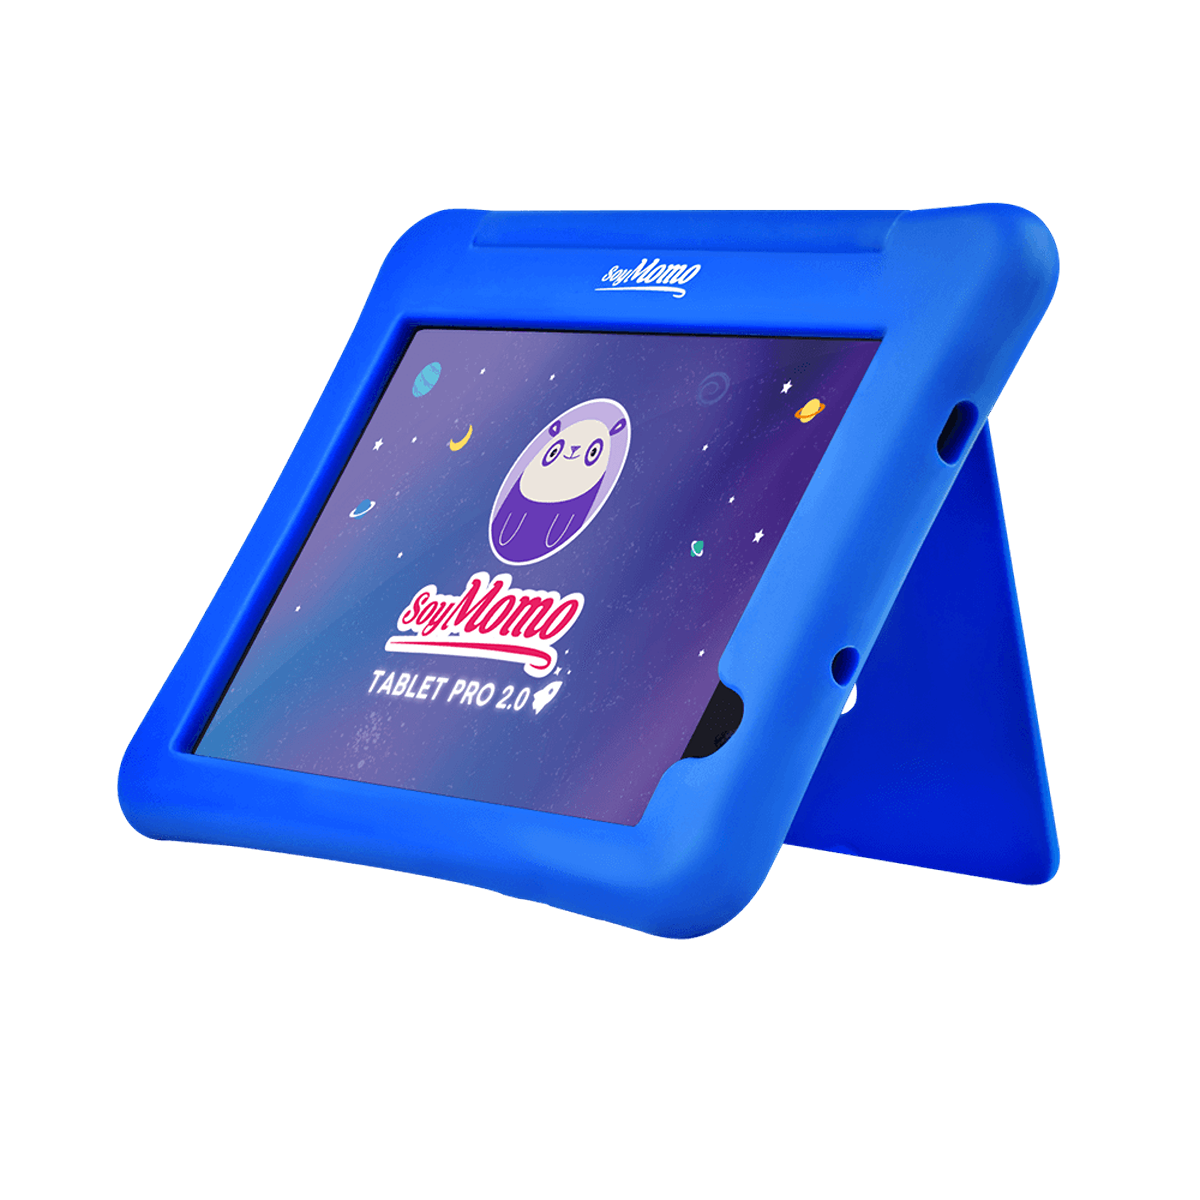 Tablet, SOYMOMO Zoll, 64 2.0 GB, TabPro Blau, 8 Blau